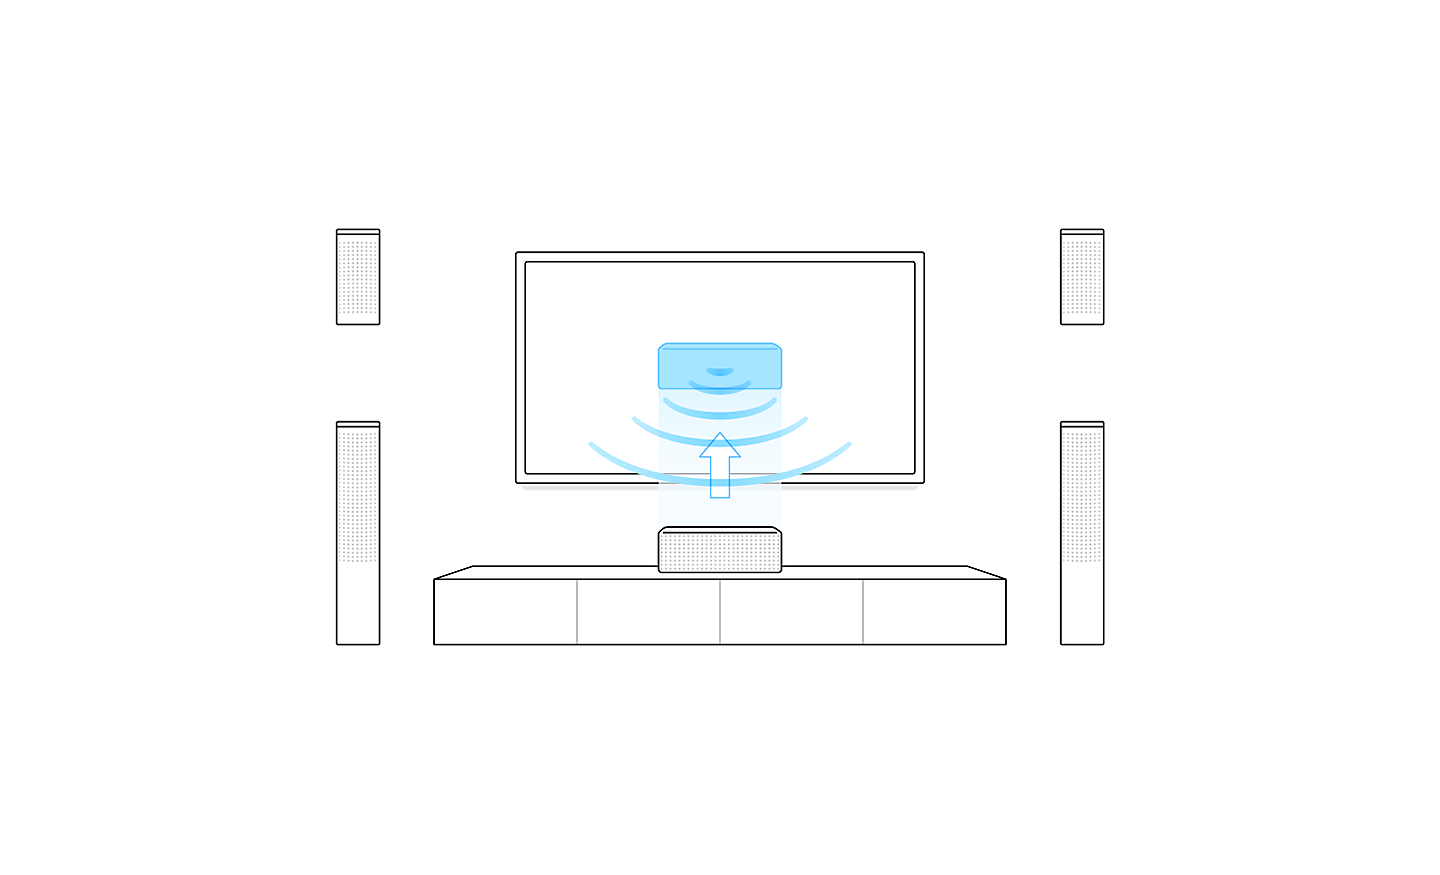 Televízió és hangszórók vázlatos képe, a középső hangszóró kék változata a televízió előtt van, és a hang irányát mutatja